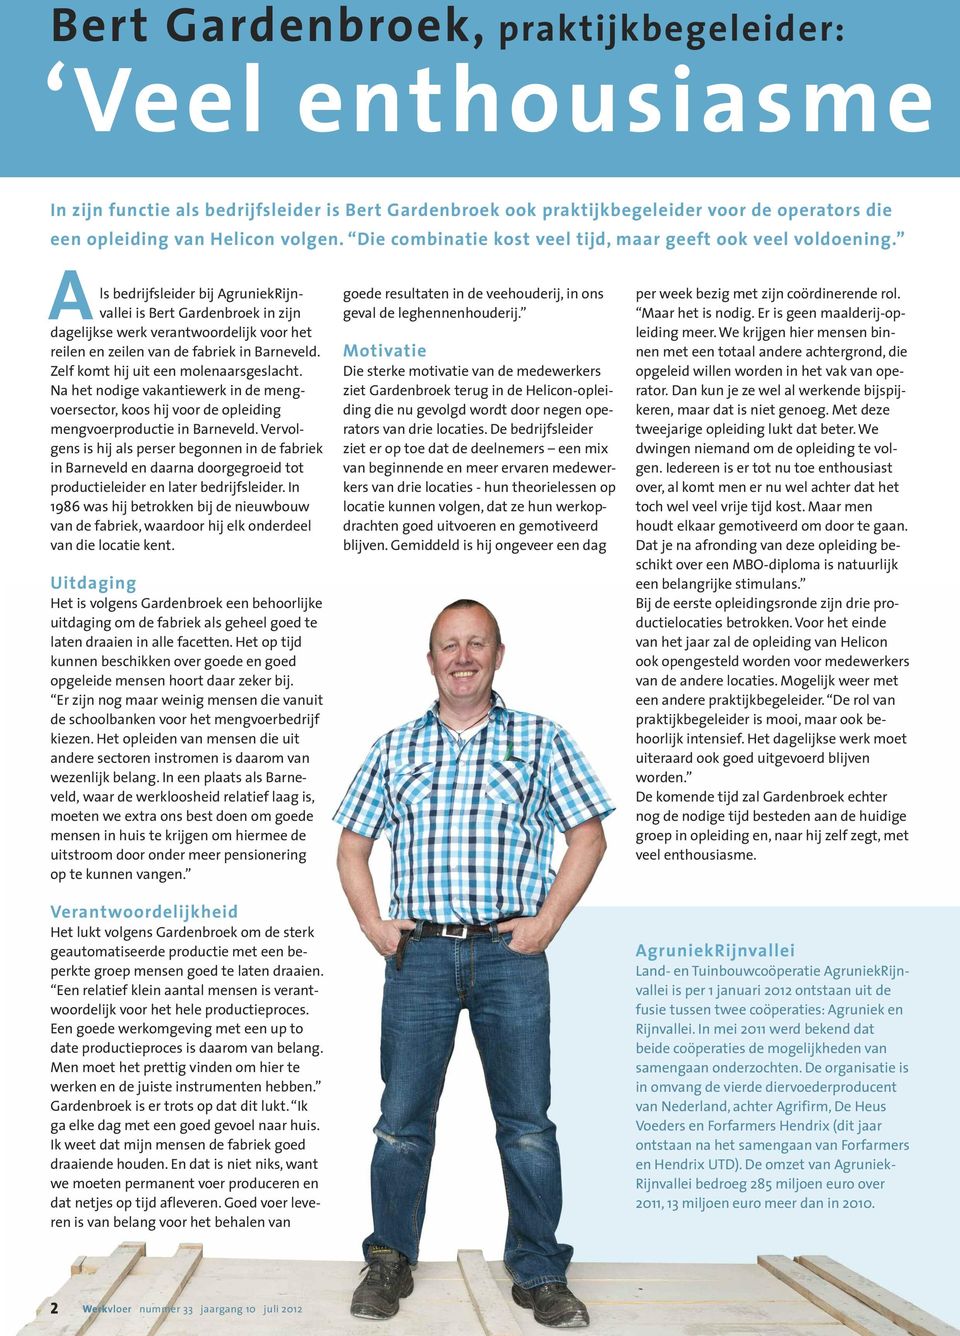 Als bedrijfsleider bij Agruniek Rijnvallei is Bert Gardenbroek in zijn dagelijkse werk verantwoordelijk voor het reilen en zeilen van de fabriek in Barneveld. Zelf komt hij uit een molenaarsgeslacht.